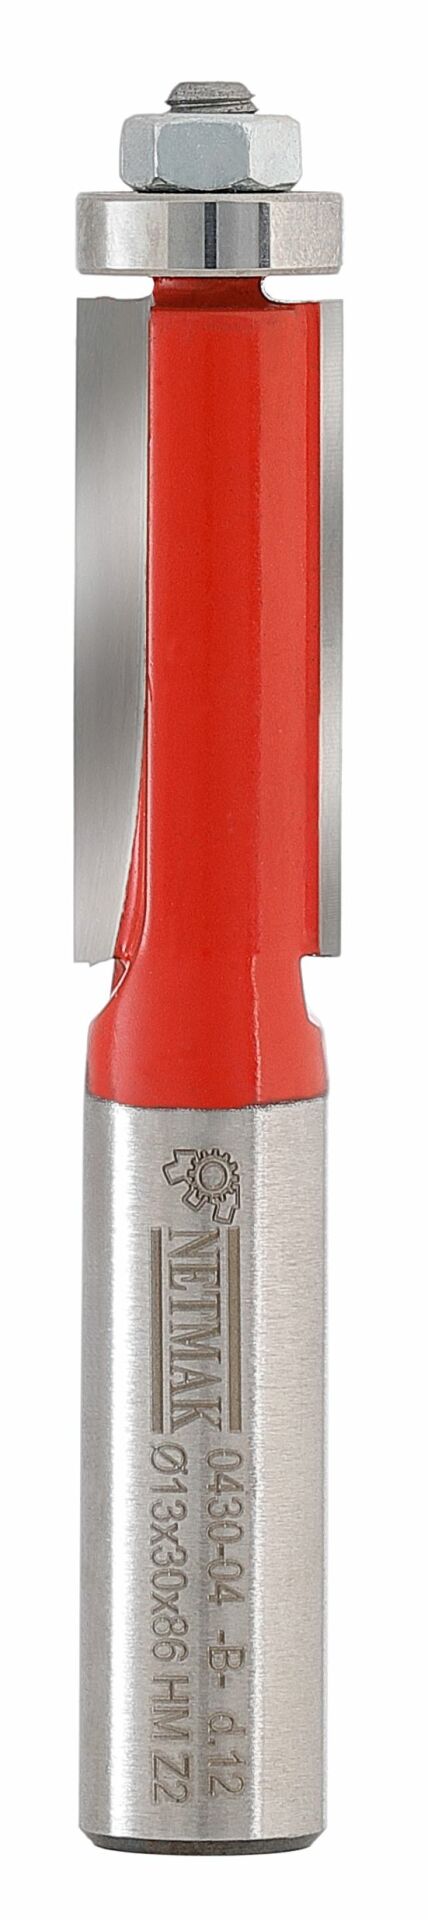 Netmak Bilyalı Temizleme Bıçağı 13x50x12mm 430-04D